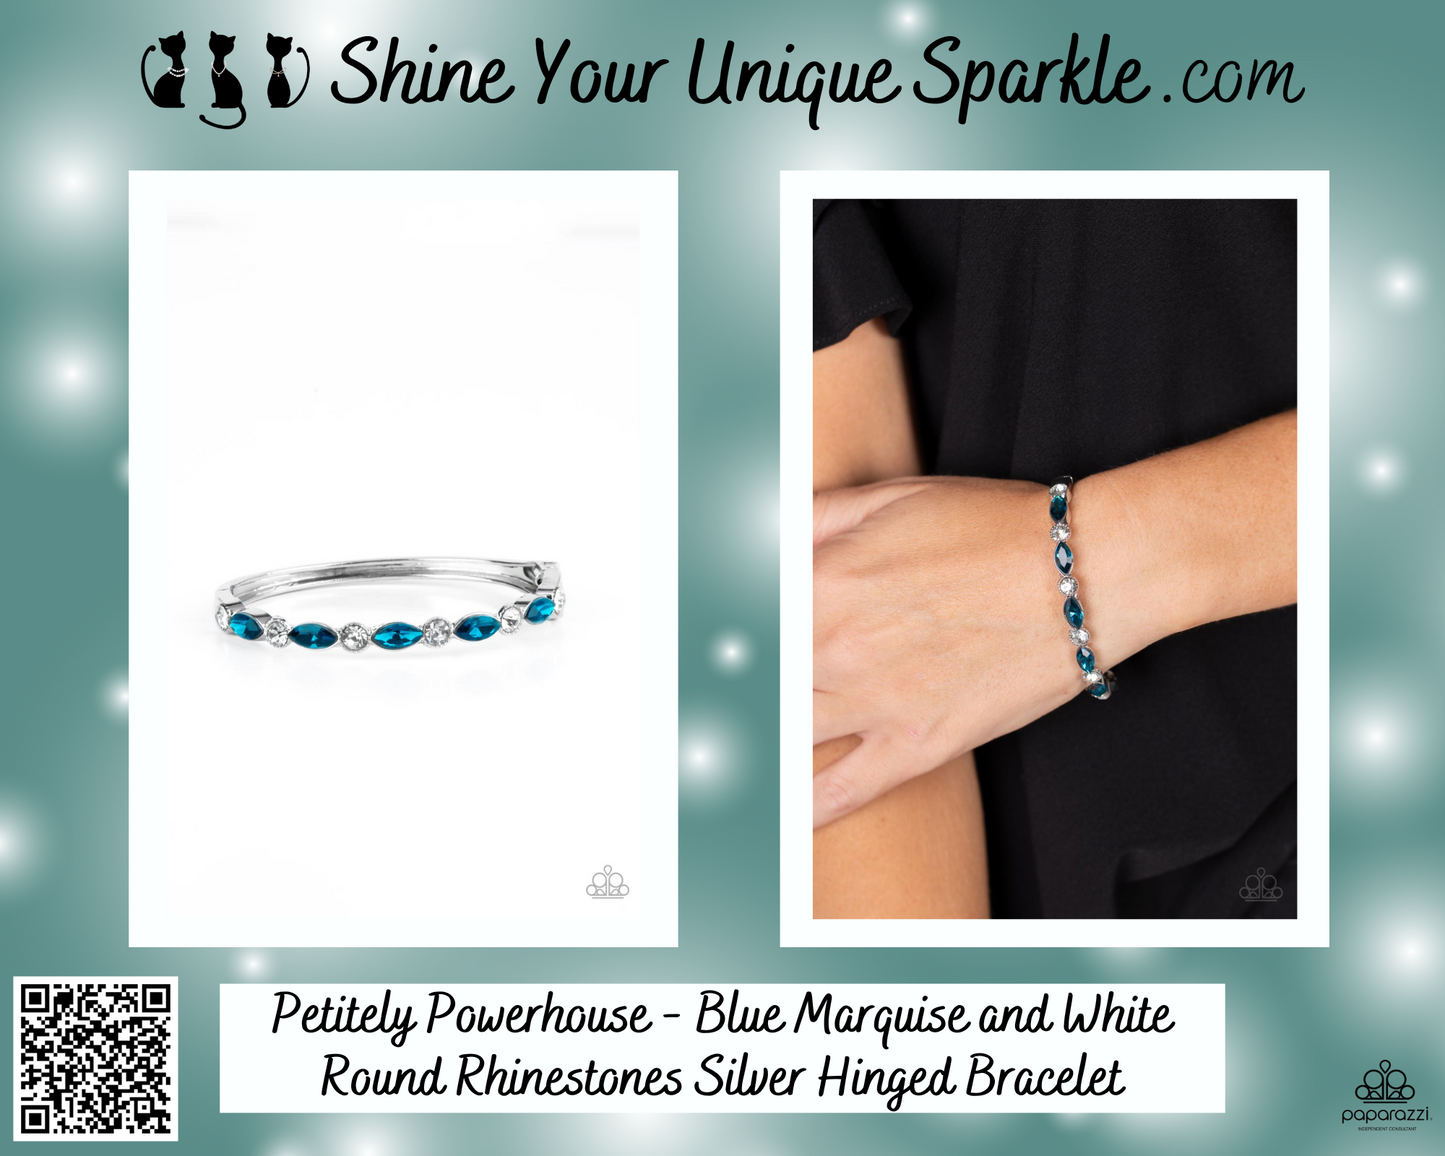 Petitely Powerhouse - Blue Marquise and White Round Rhinestones Silver Hinged Bracelet